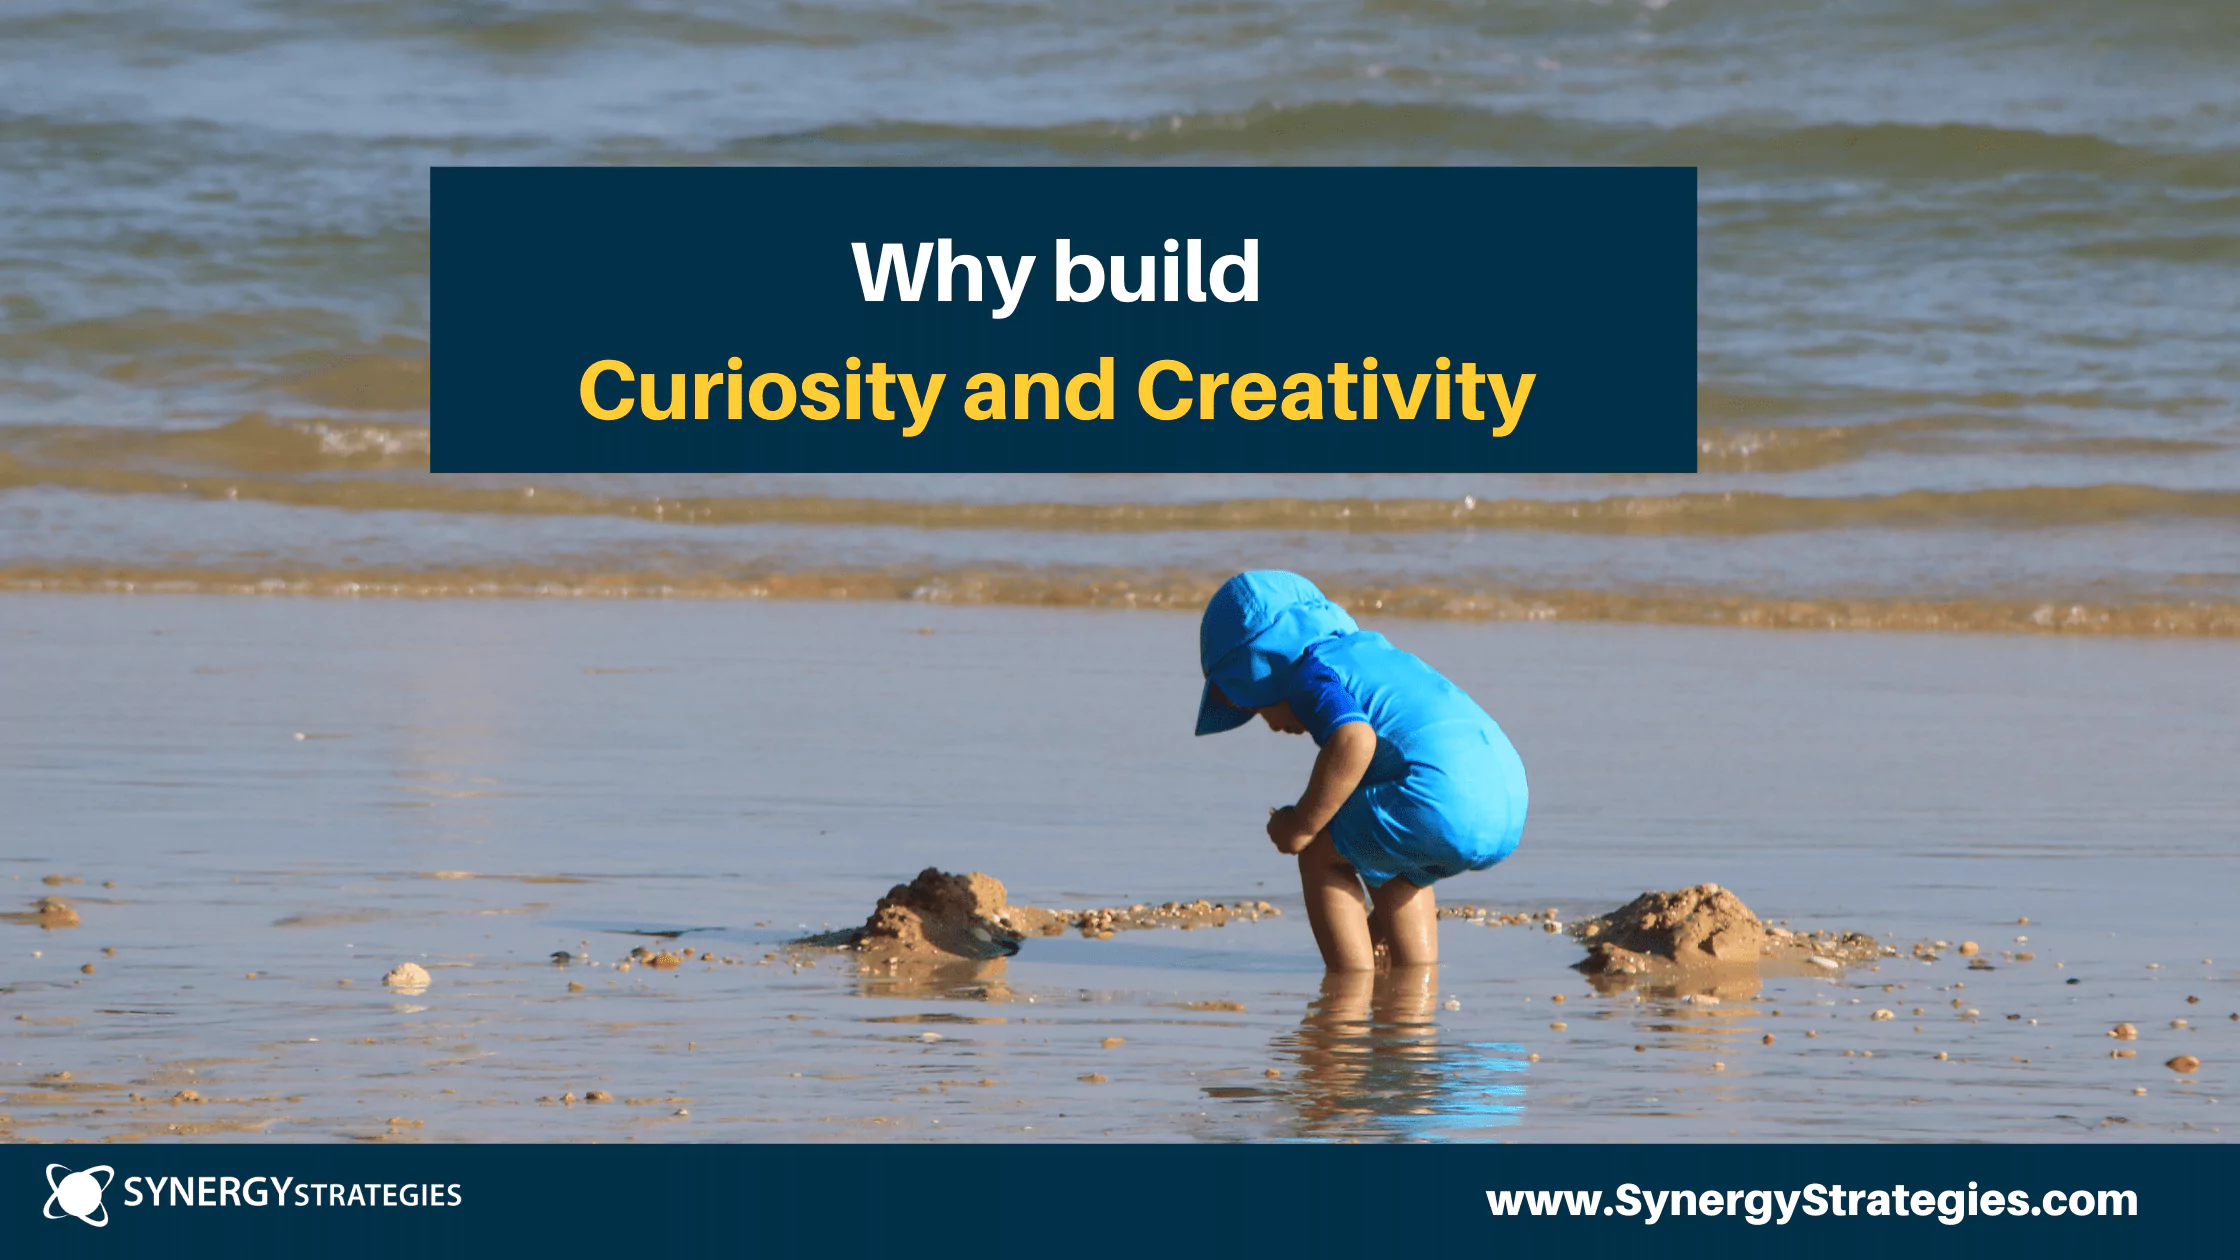 WHY BUILD CURIOSITY AND CREATIVITY